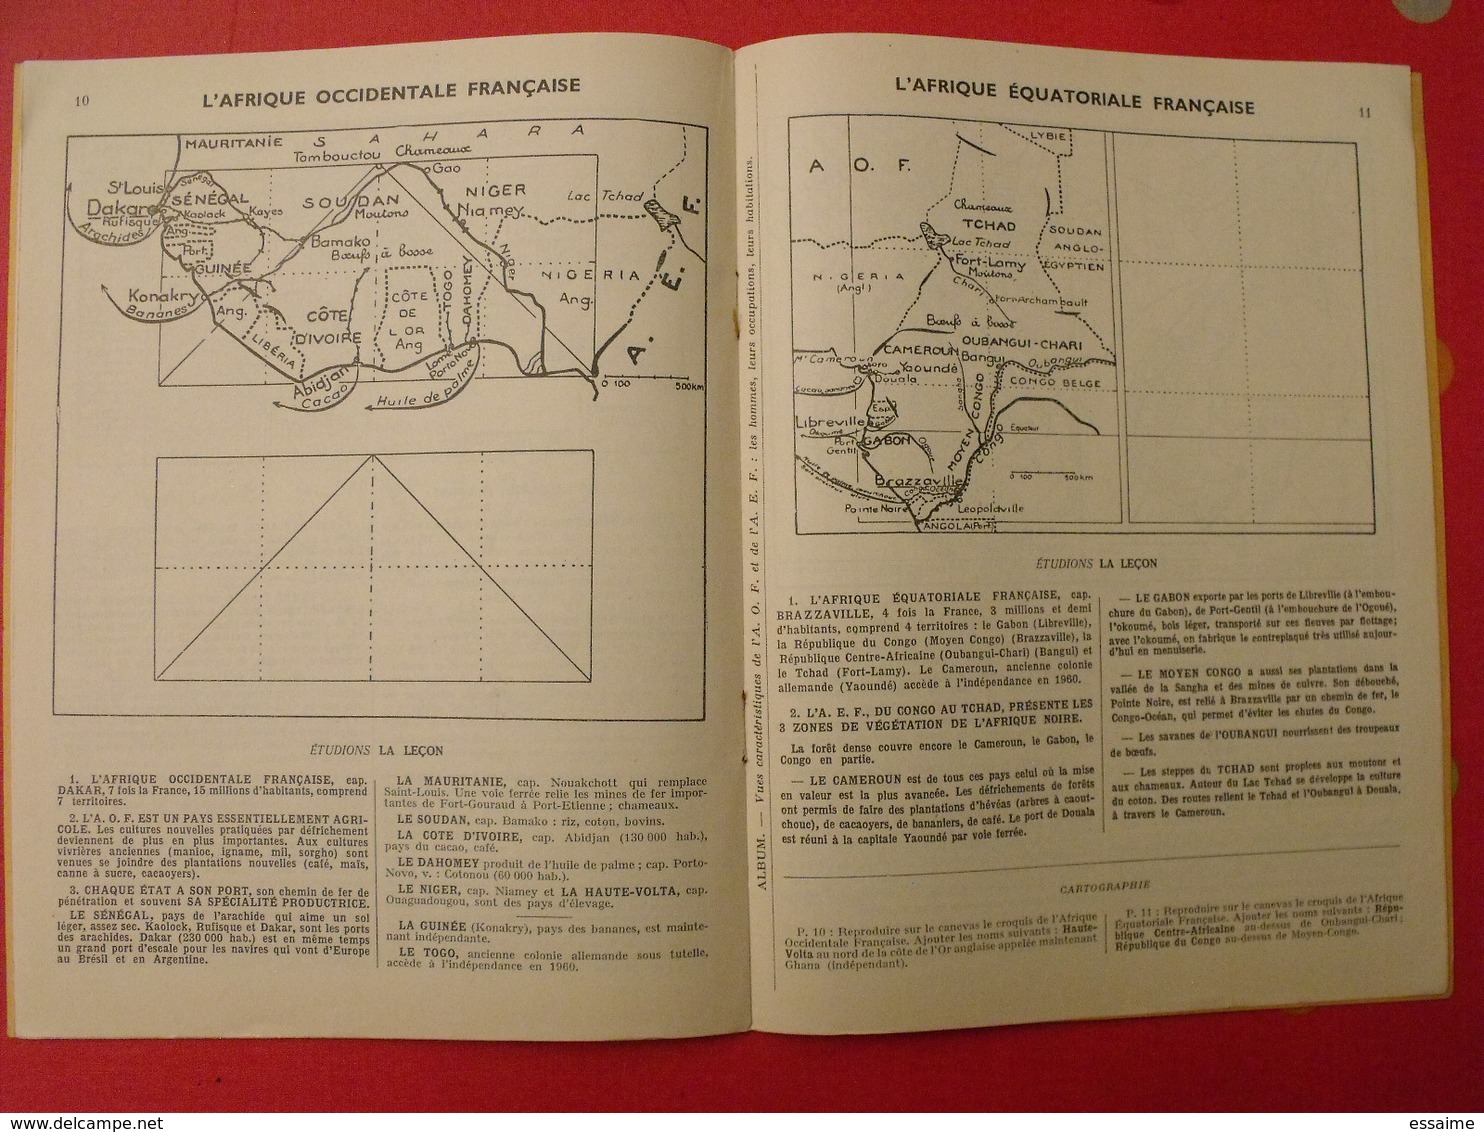 3 livrets de géographie. E. Millet. Arrault et Cie, tours, 1949, 1960. communauté française, monde